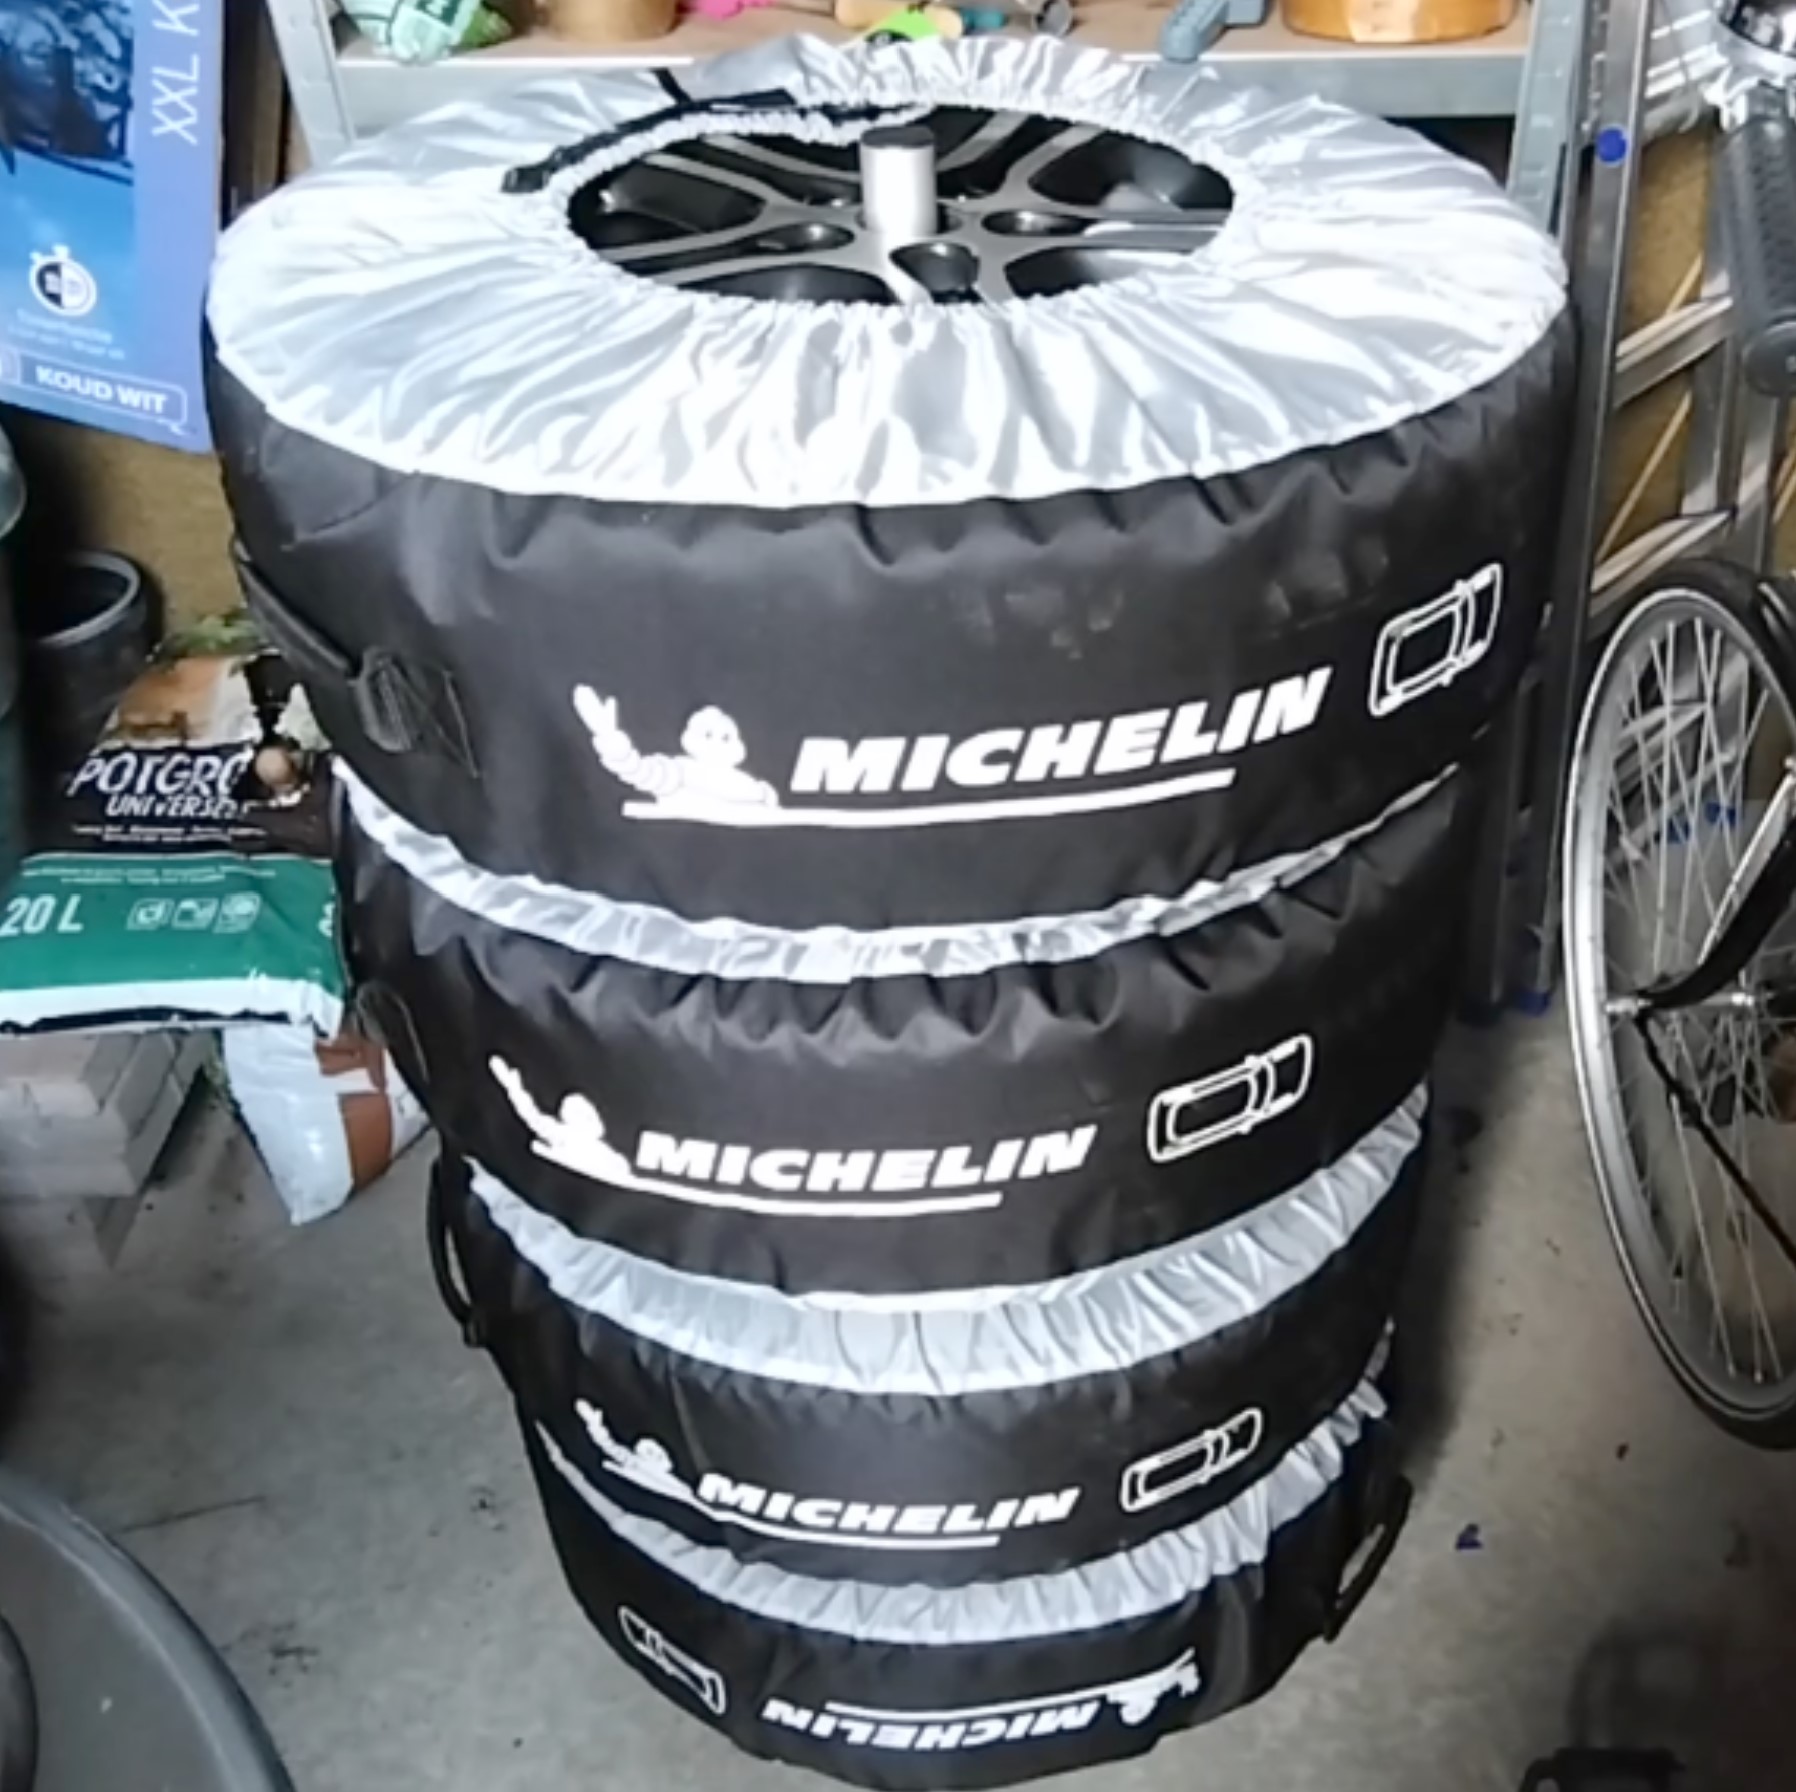 Michelin auto reifen tassen carpoint felgenbaum test erfahrung